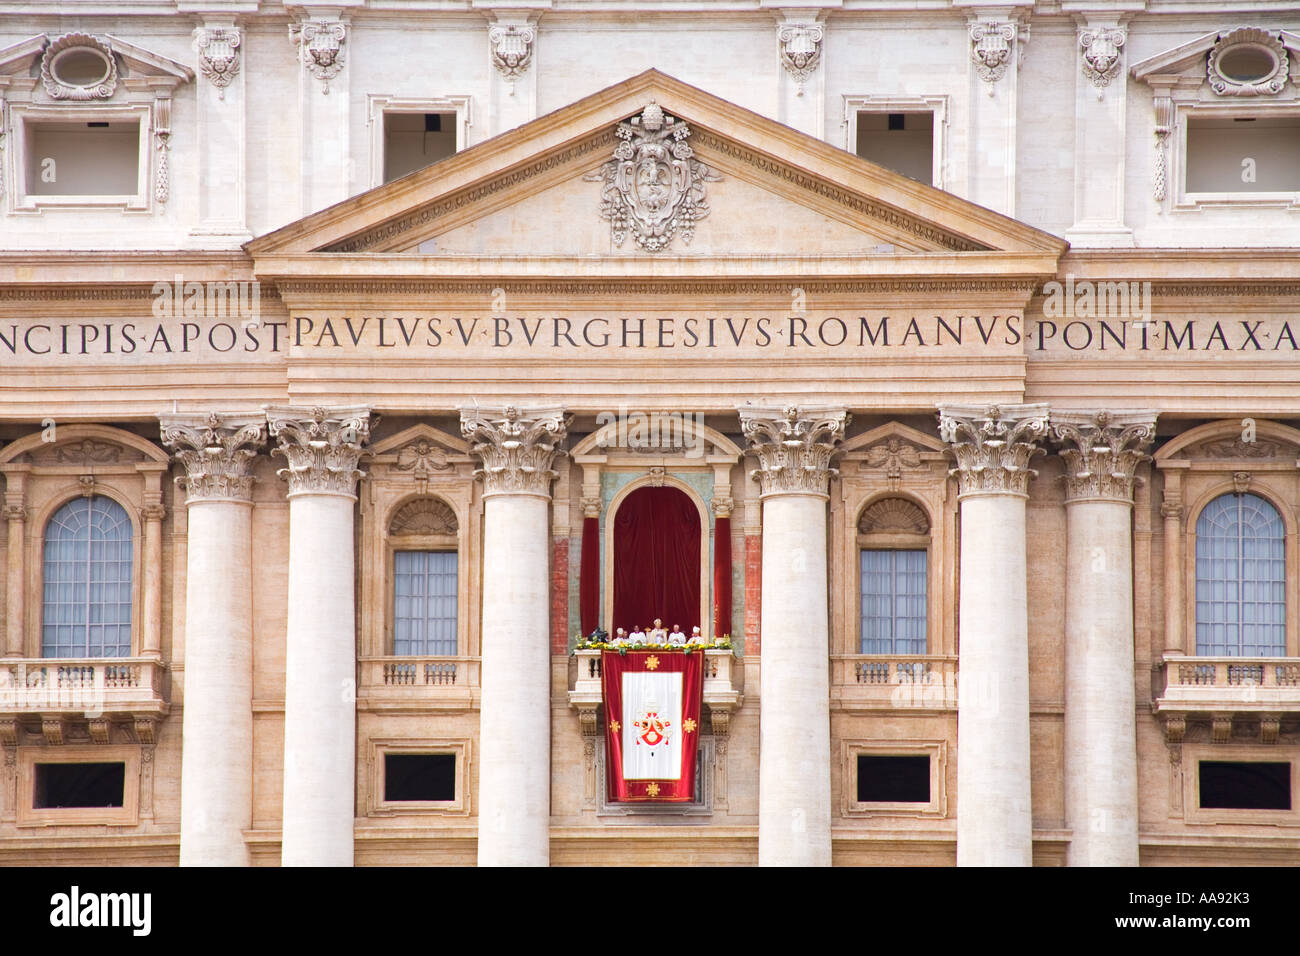 Roma Vaticano Piazza San Pietro la Domenica di Pasqua i cristiani di tutto il mondo ricevono papale benedizione di pasqua dal papa Foto Stock